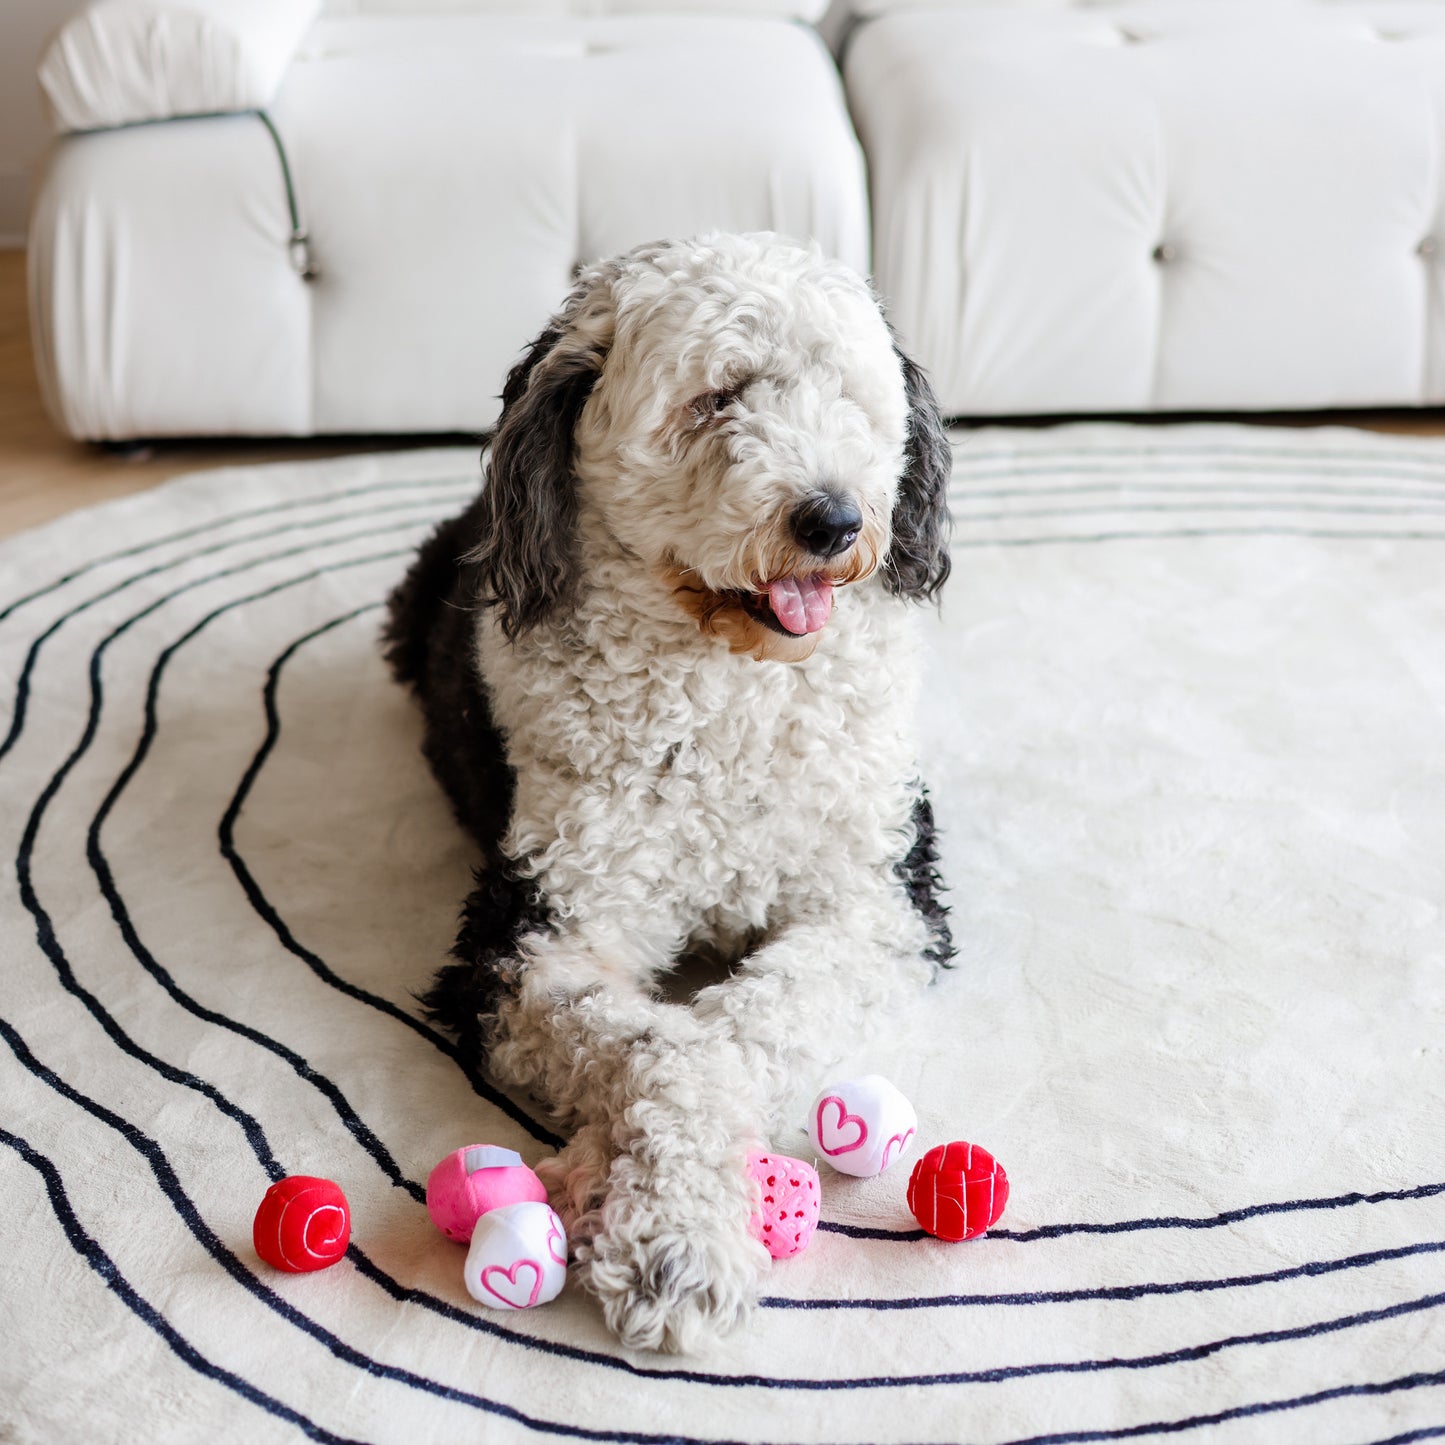 Midlee Valentine Plush Balls Dog Toy - Set of 6